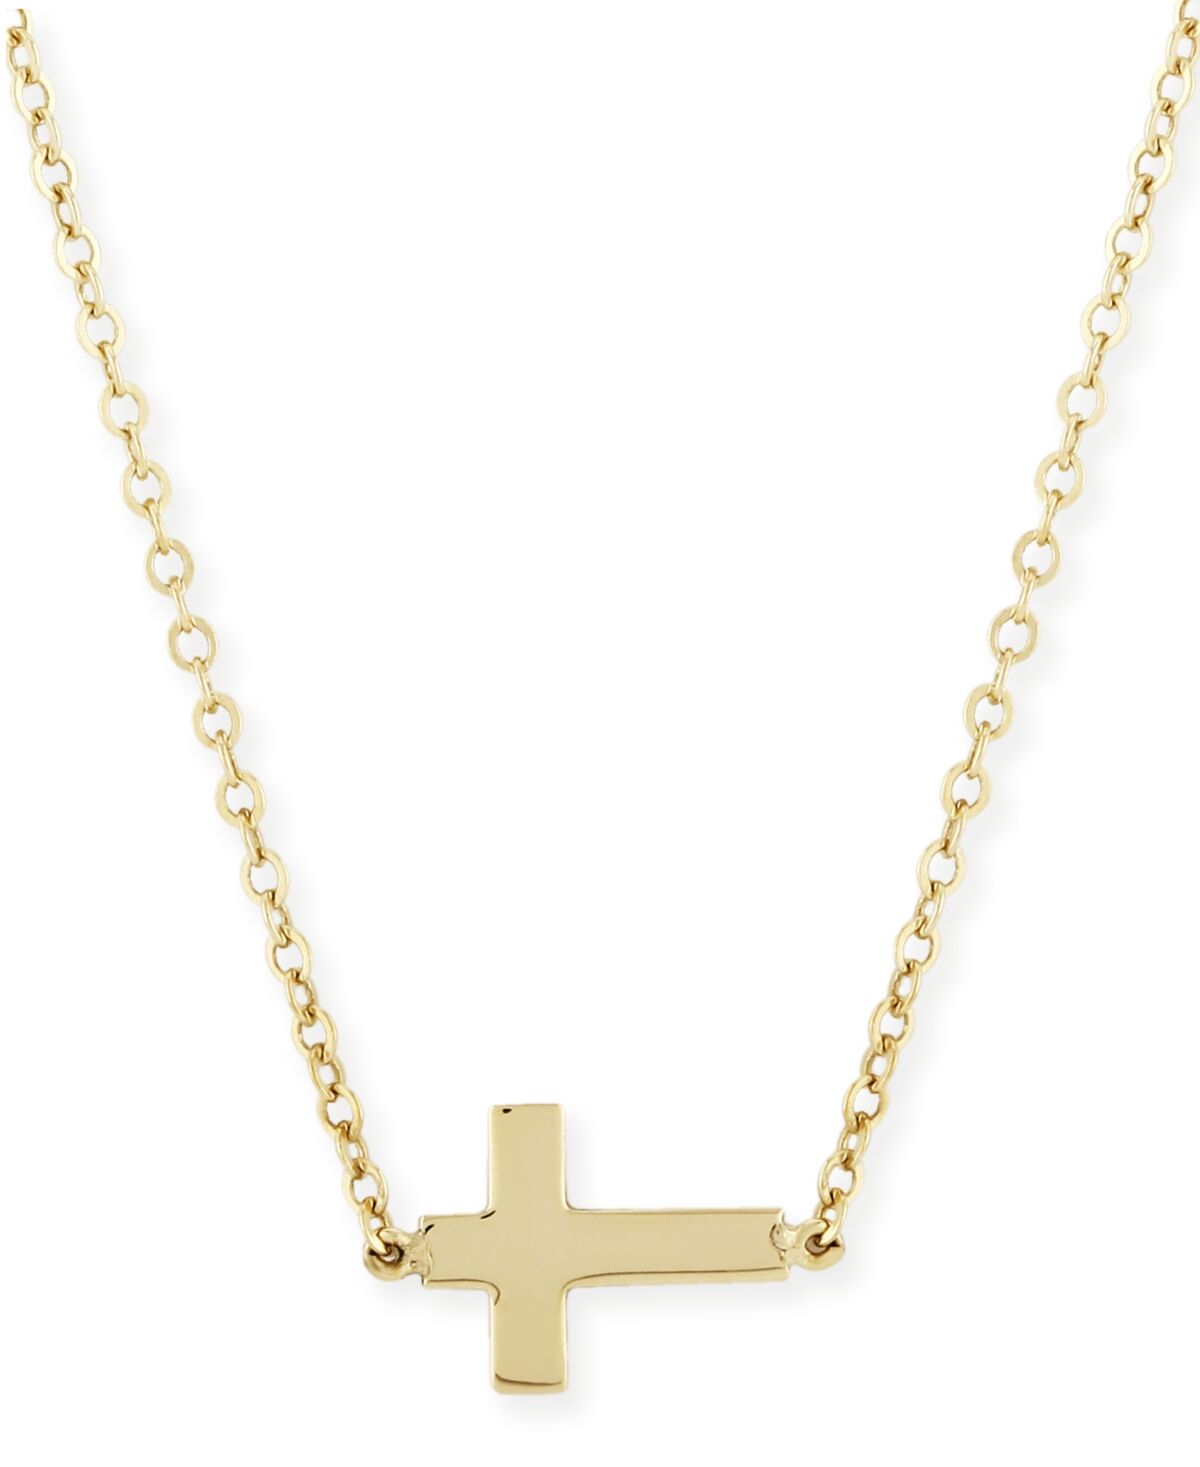 Macy's Sideways Cross Necklace Set in 14k Gold - Gold